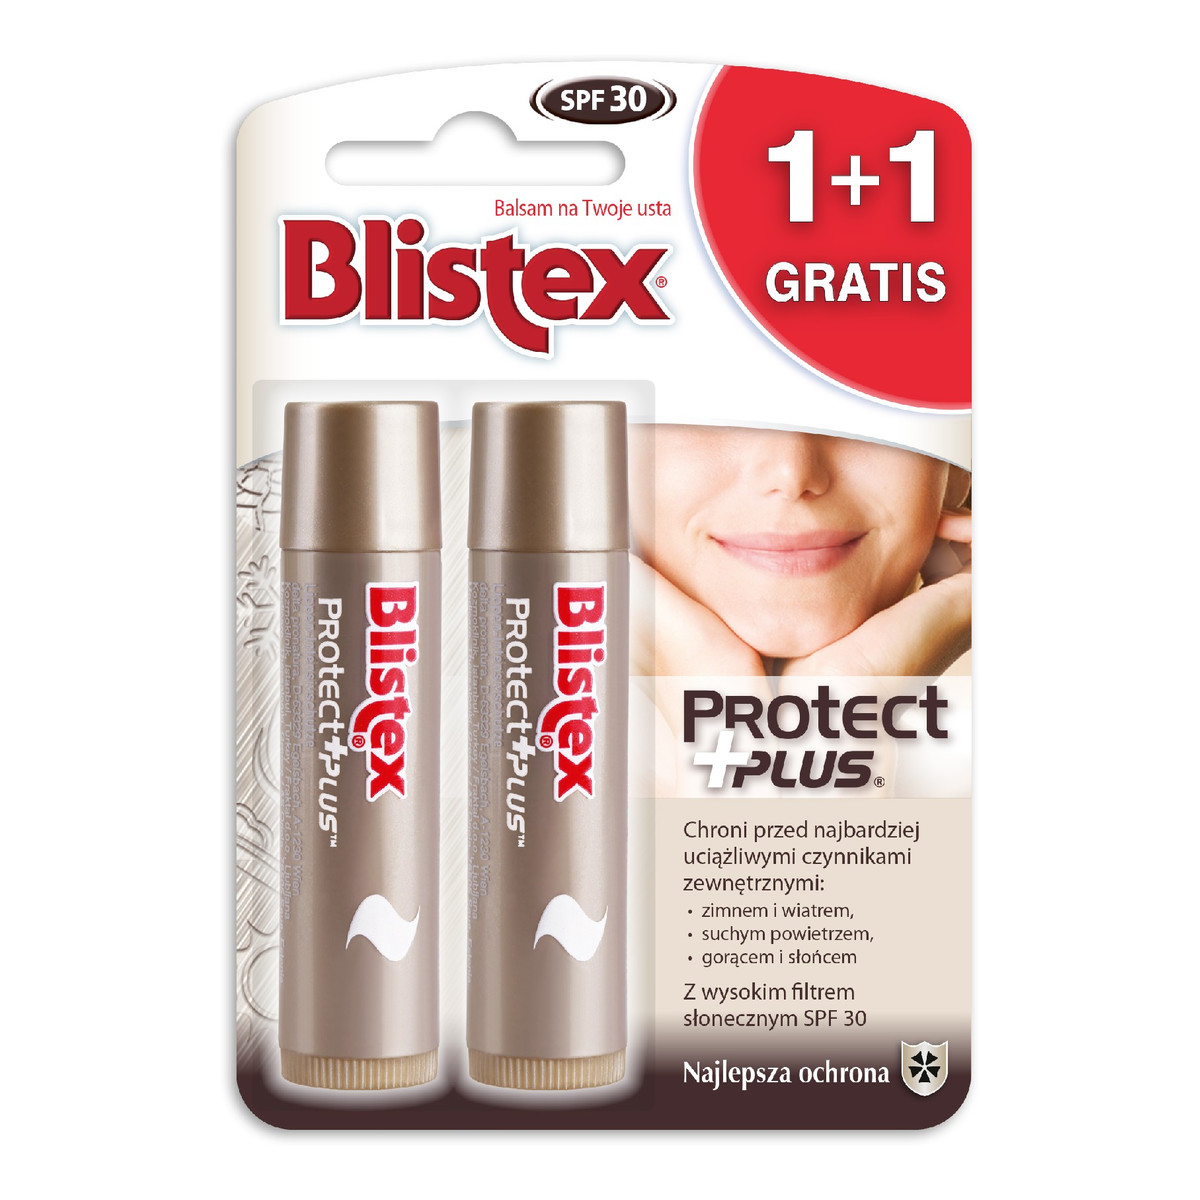 Blistex Balsam ochronny do ust Protect Plus 1+1 gratis (4.25g x 2) 8.5g